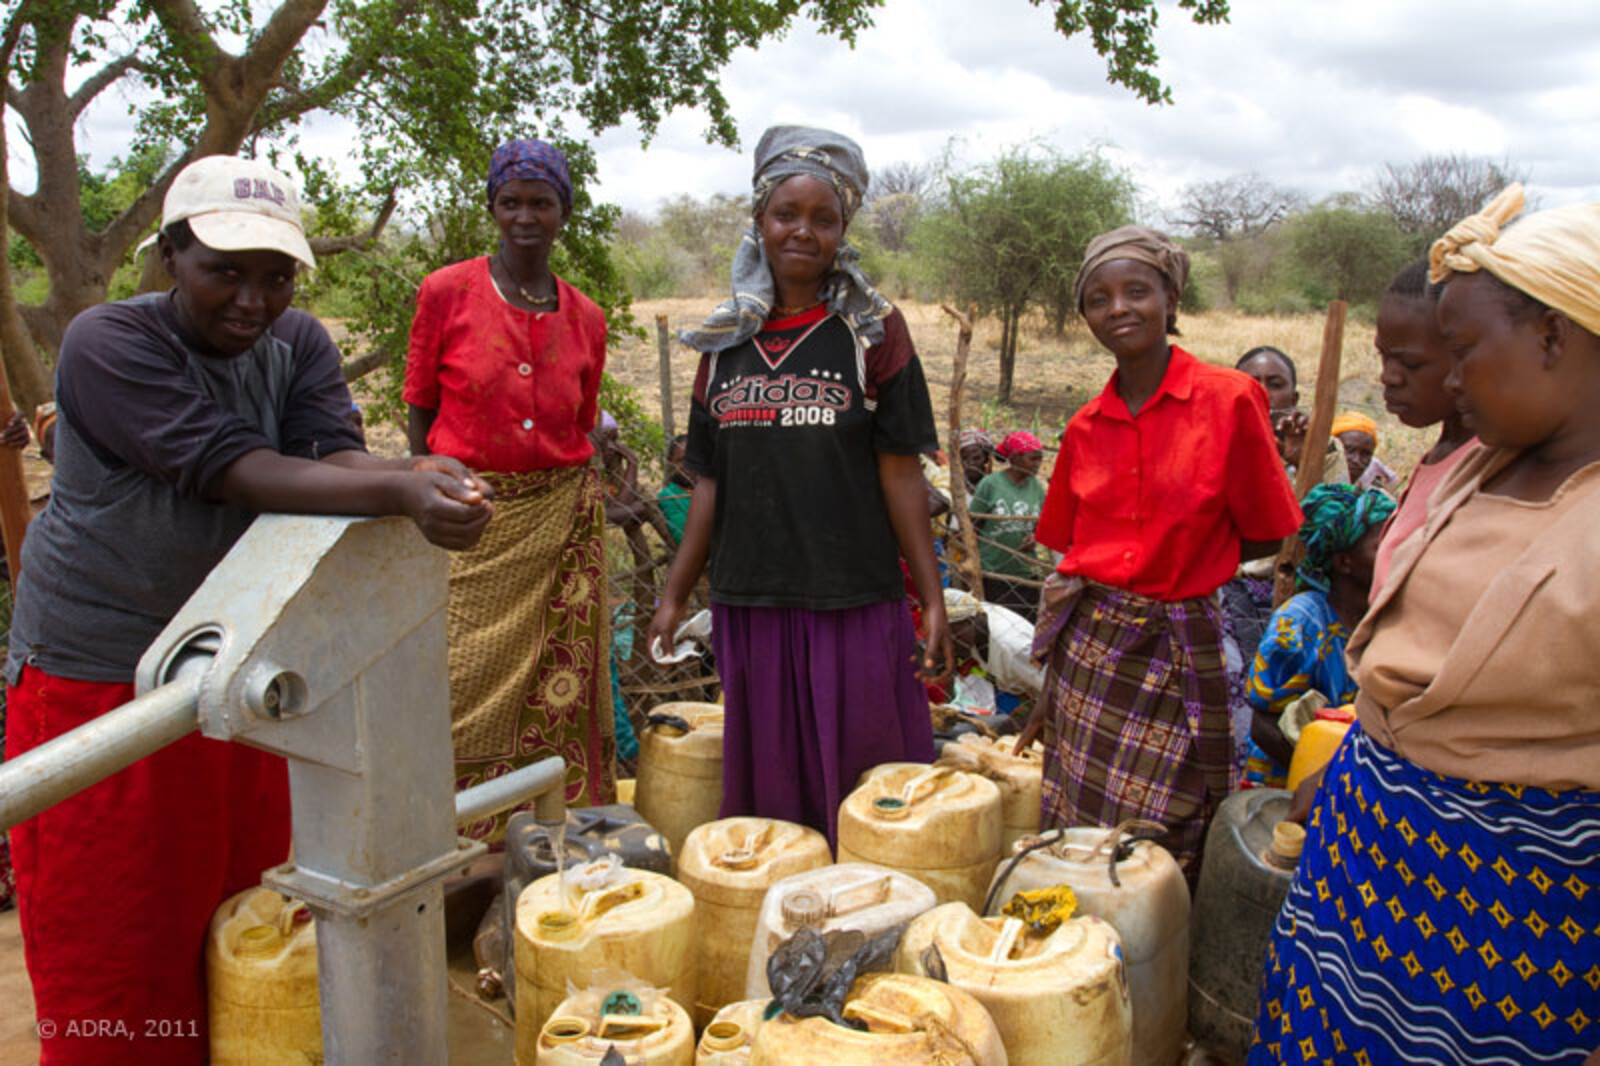 Arche noVa arbeitet gemeinsam mit einem lokalen Partner in Äthiopien an der Instandsetzung von Brunnen, Zisternen und dem Bau von Regenauffangbecken. Ziel ist es, die Wasserversorgung der Menschen in der Afar Region langfristig zu verbessern.